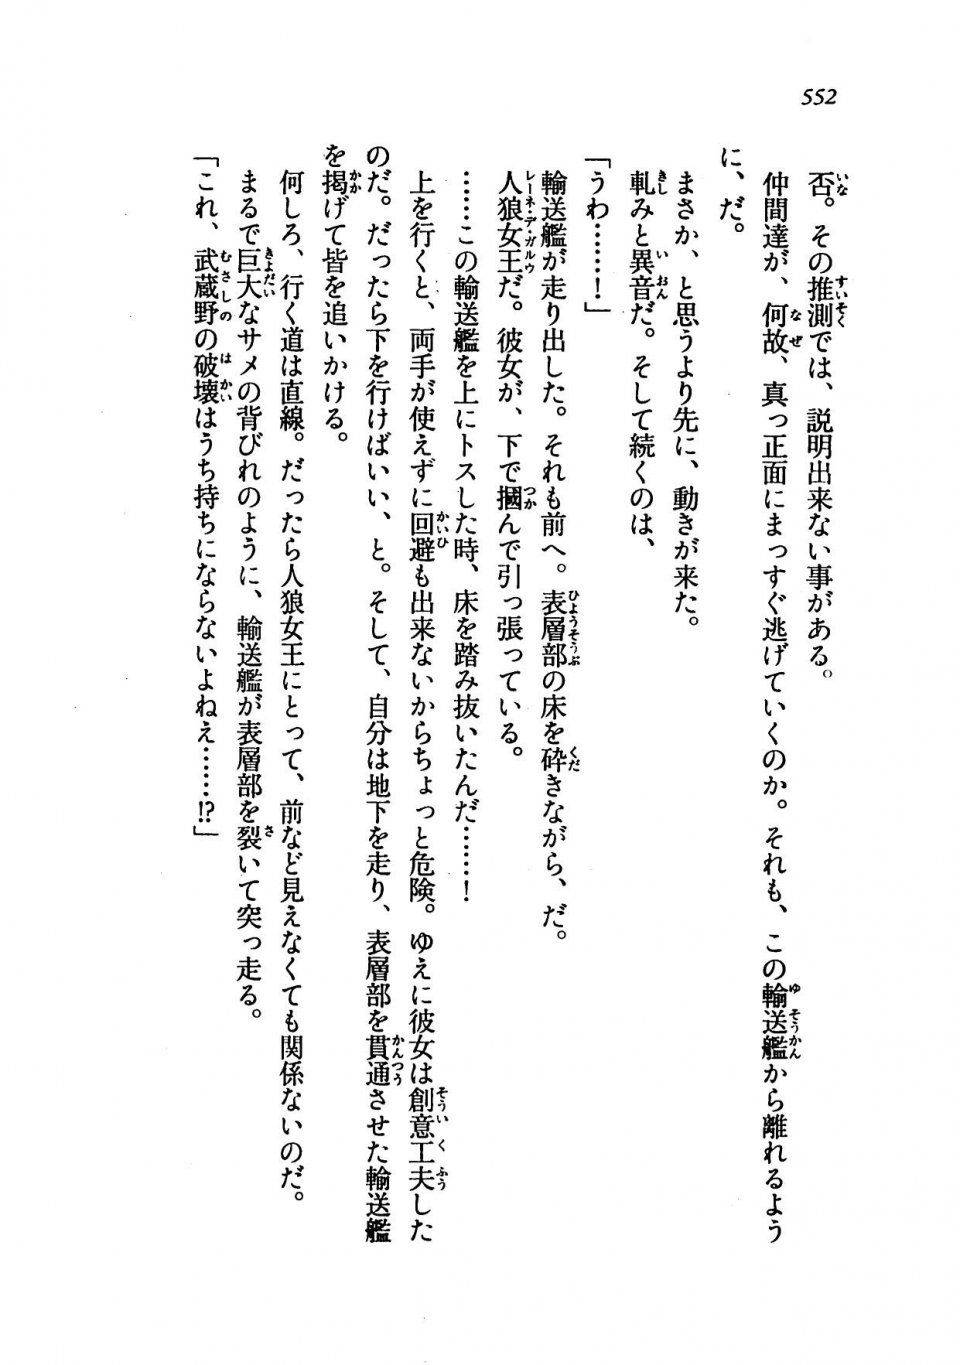 Kyoukai Senjou no Horizon LN Vol 19(8A) - Photo #552